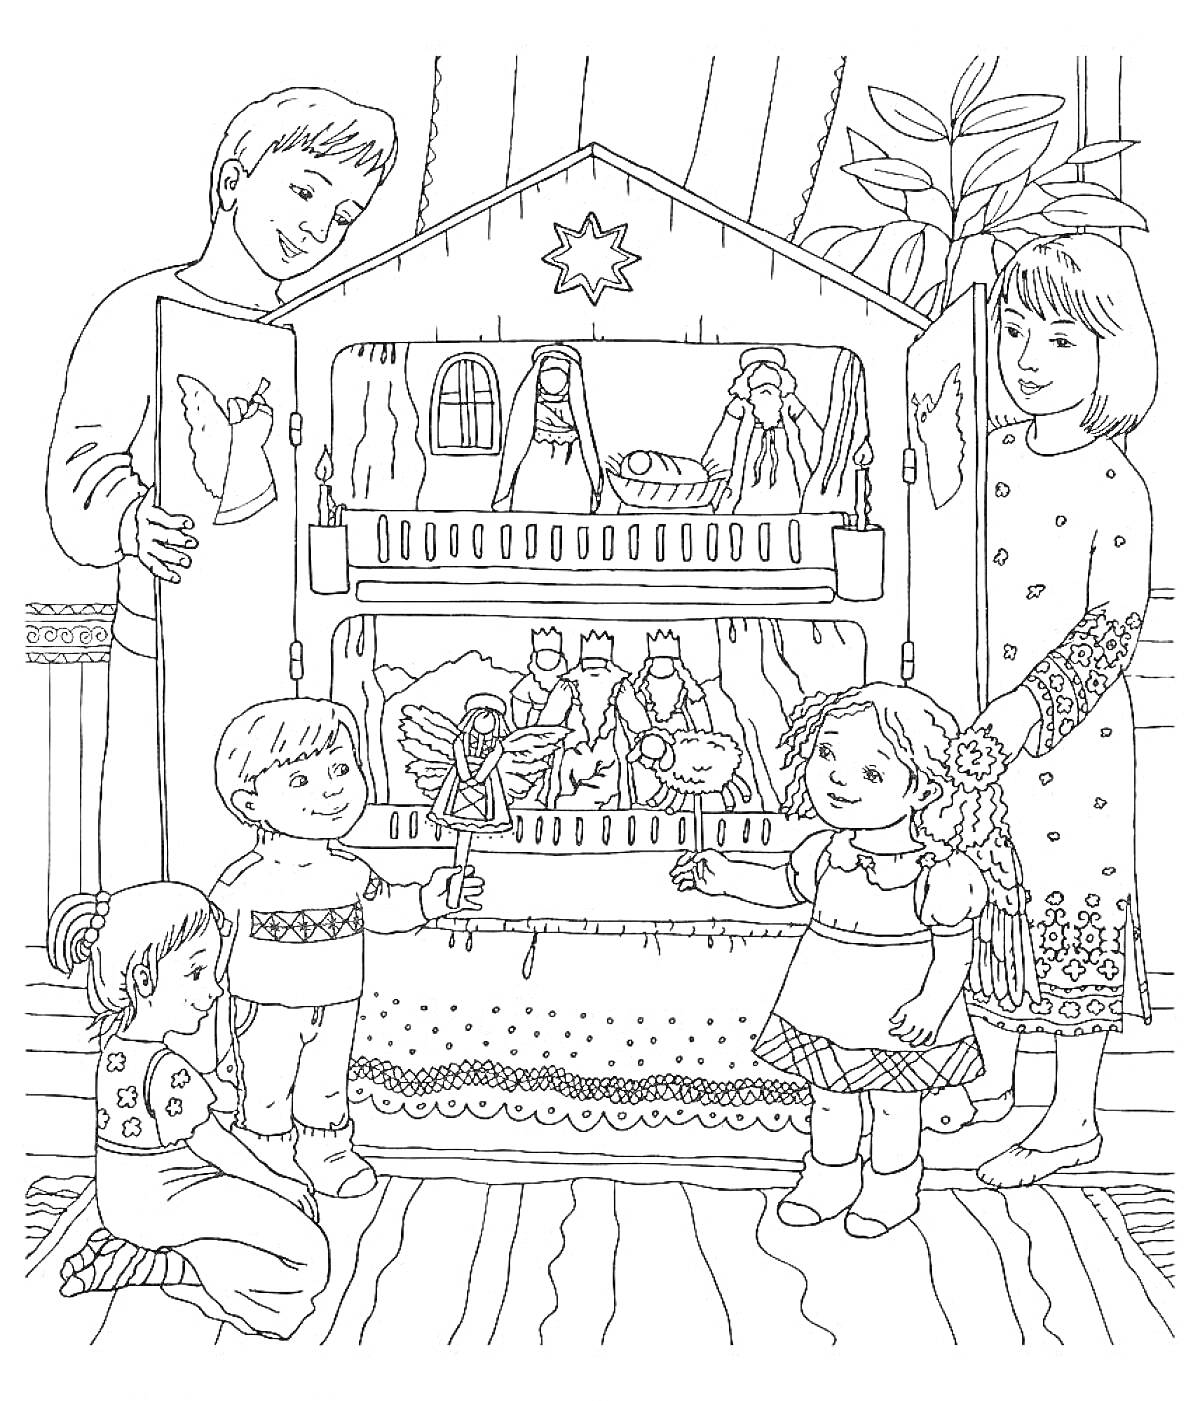 Раскраска дети перед рождественским вертепом с фигурками ангелов, аистов и волхвов, один мальчик держит фигурку ангела, взрослые помогают им